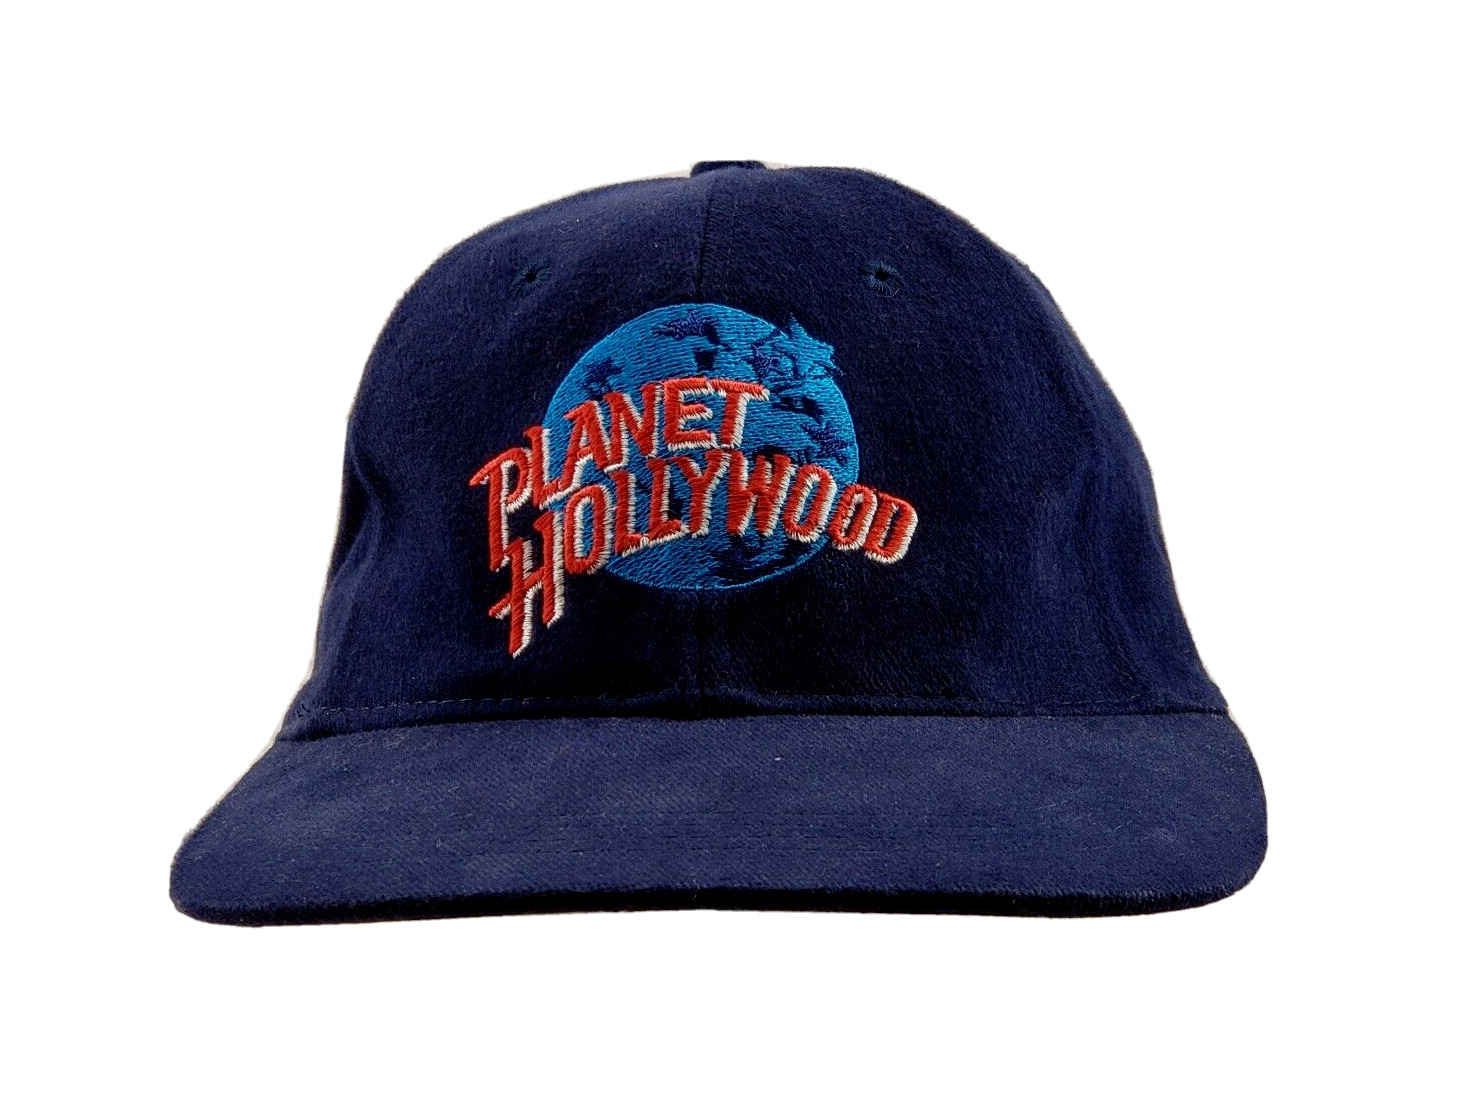 Planet Hollywood Puerto Vallarta Vintage Snapback Hat